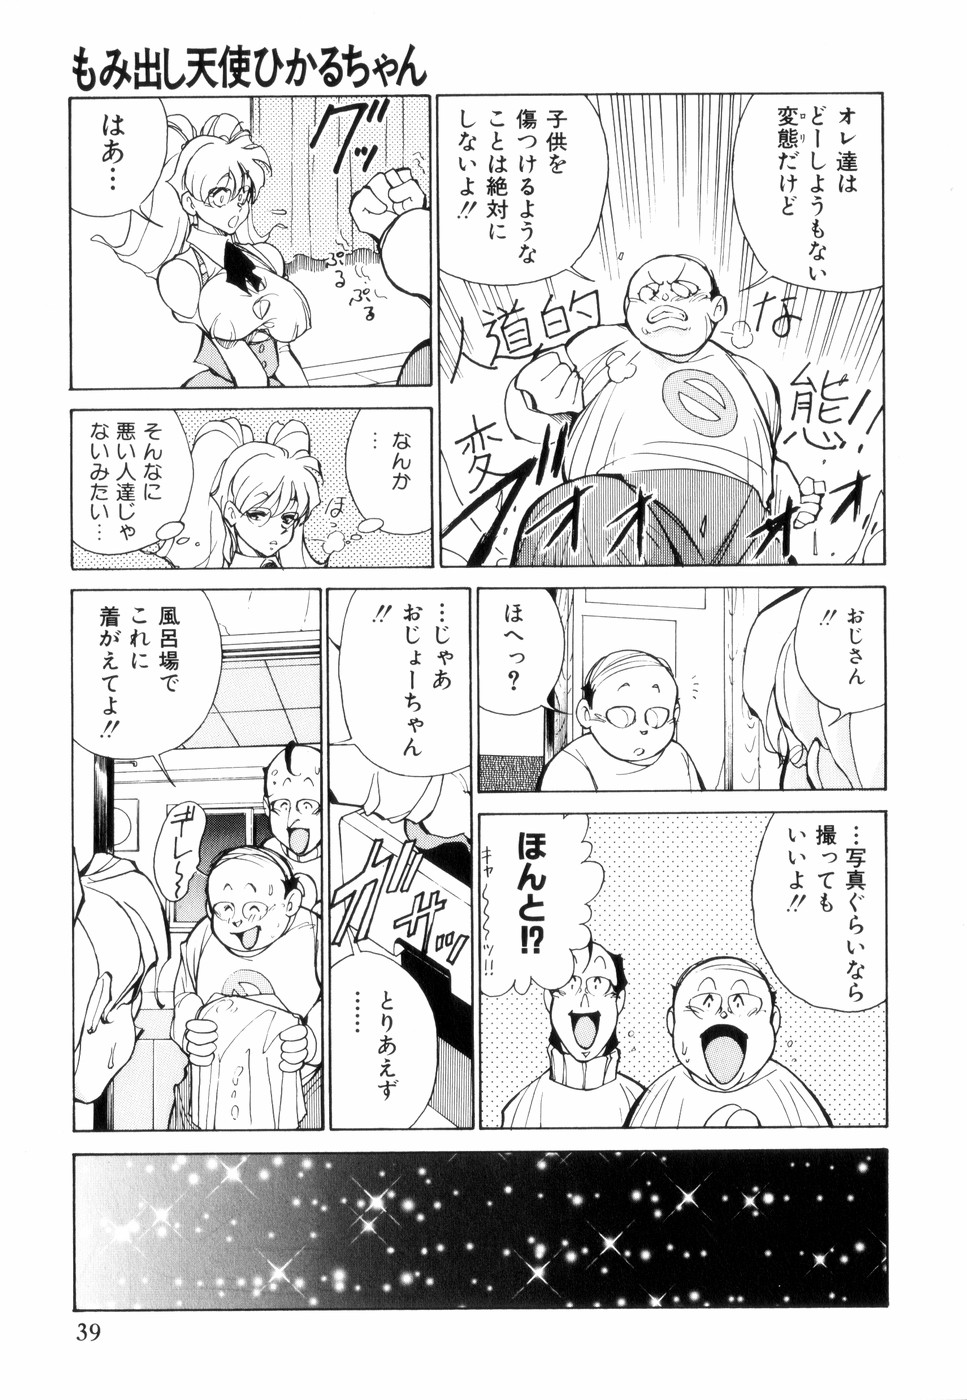 [1ROO] Hakujuu no Hasha page 43 full